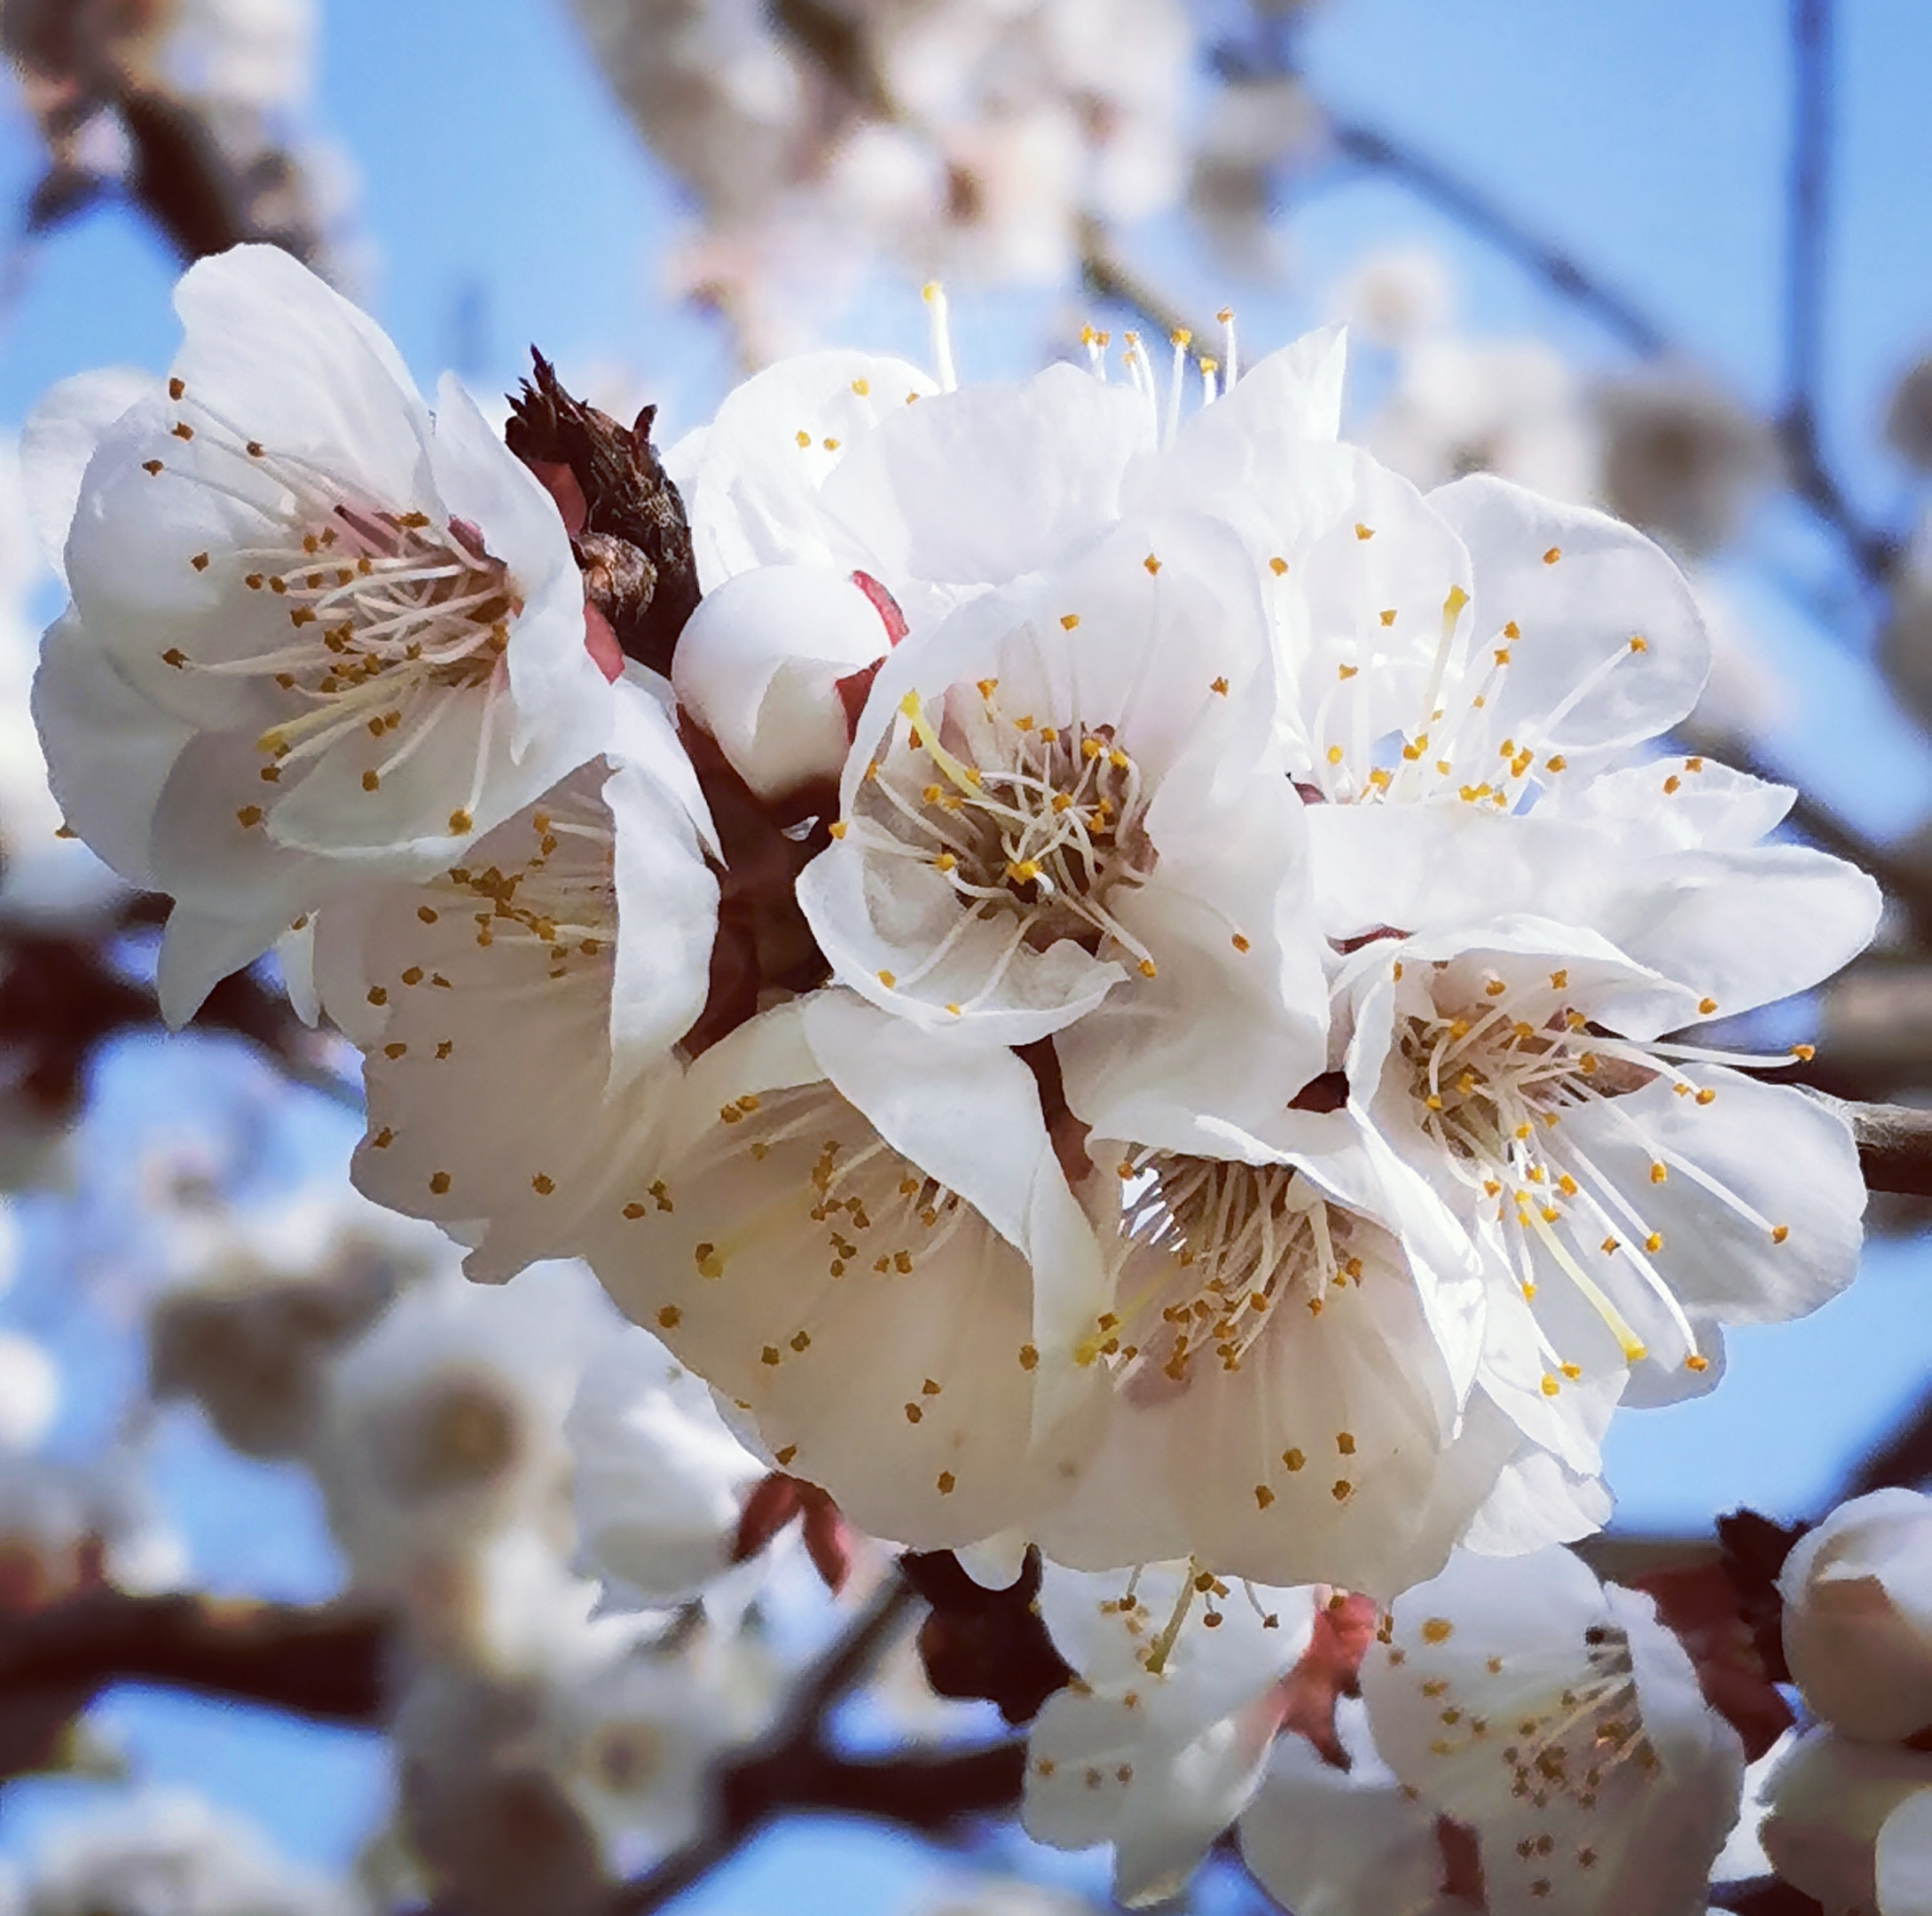 樱桃花是百果第一花,她以纯粹的姿态为春天撩开了帷幕.